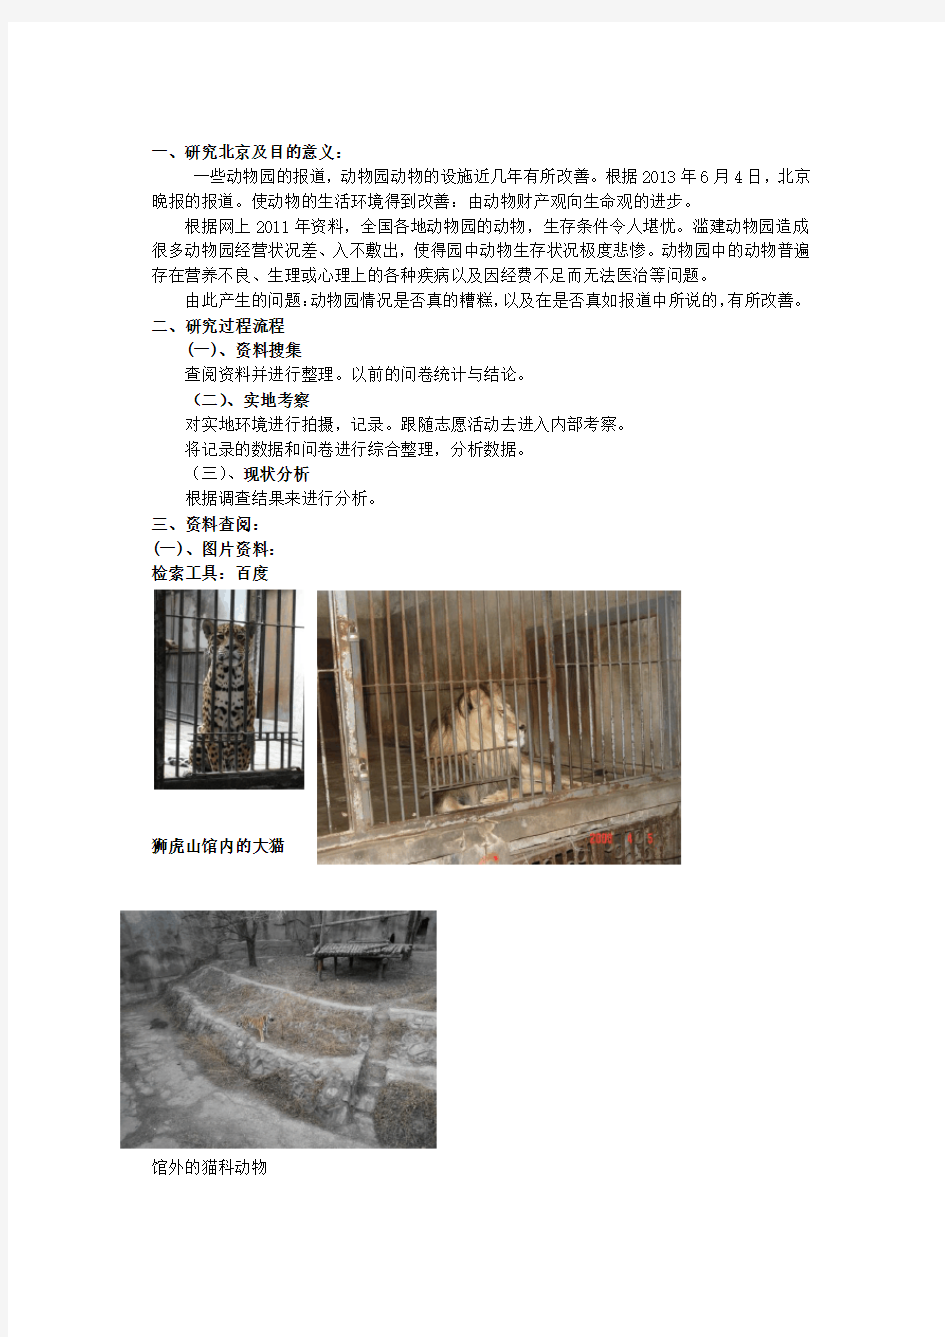 近几年北京动物园动物生存状况调研报告【上传】